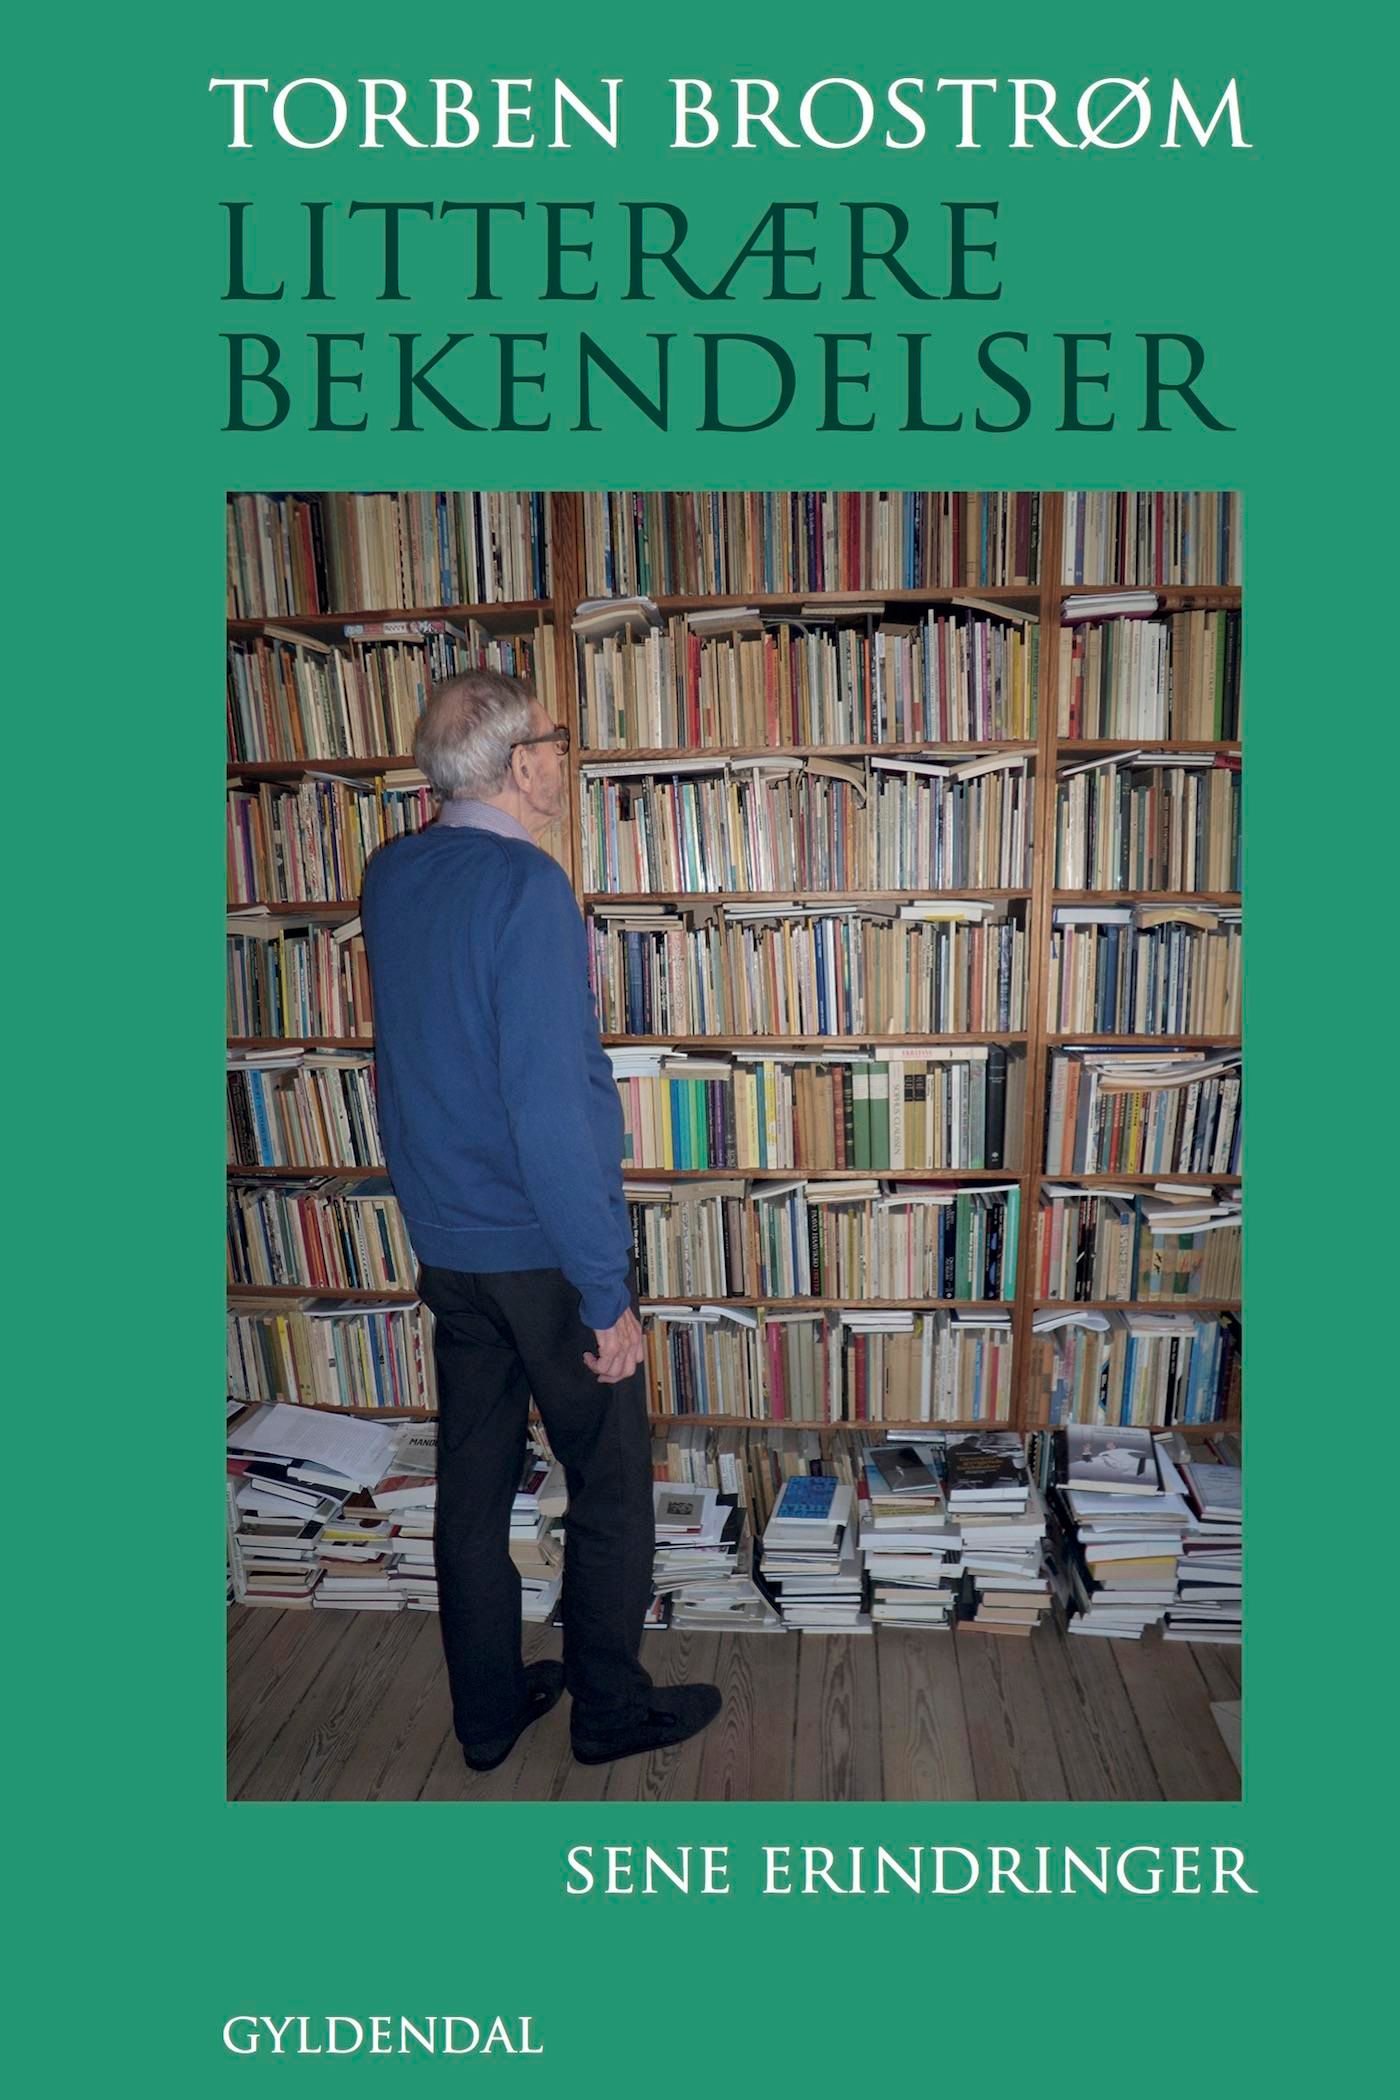 Litterære bekendelser, eBook by Torben Brostrøm